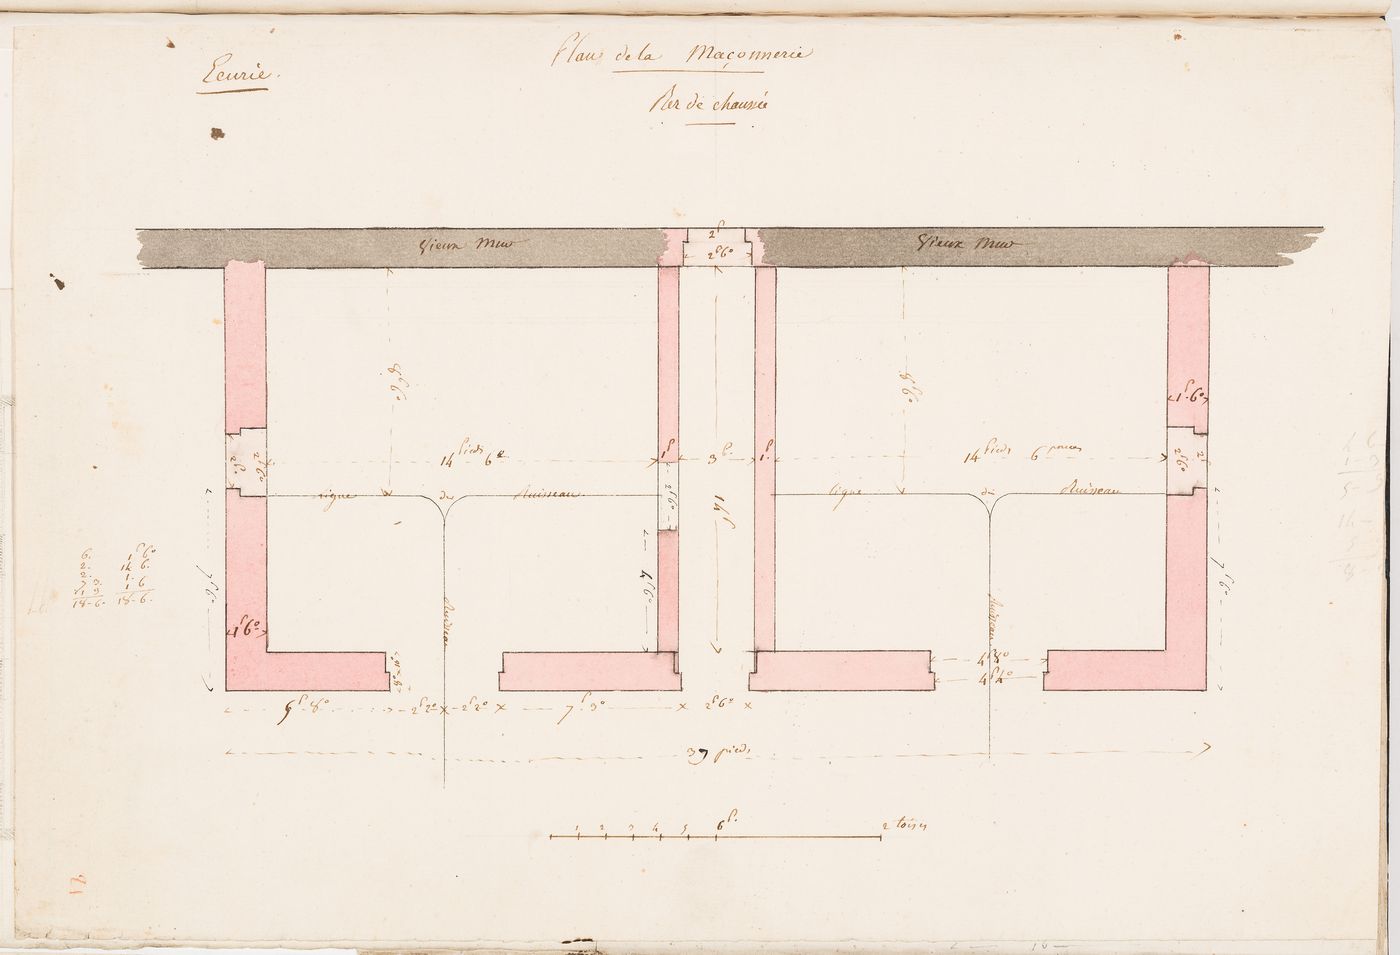 Ground floor plan for a stable, Domaine de La Vallée